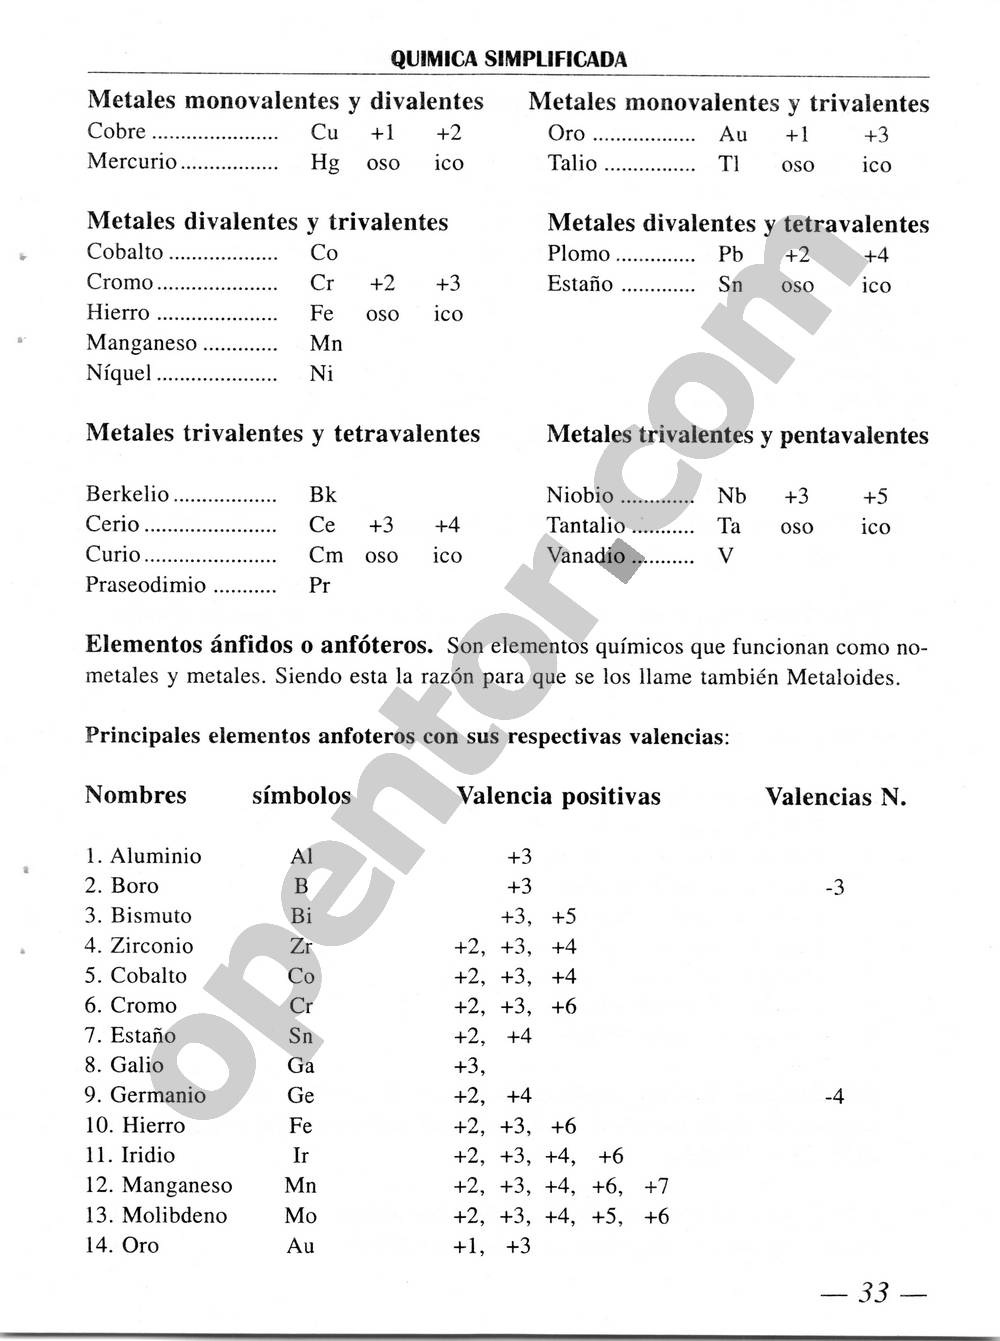 Química Simplificada de Diómedes Solano - Página 33